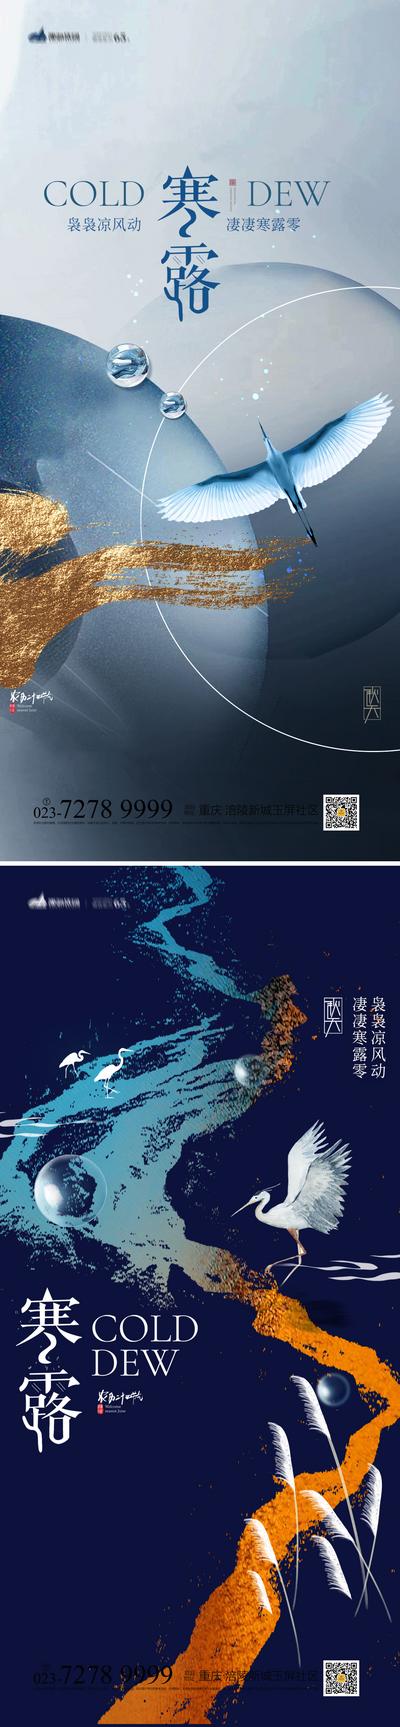 南门网 海报  二十四节气 寒露 露珠 飞鹤 系列